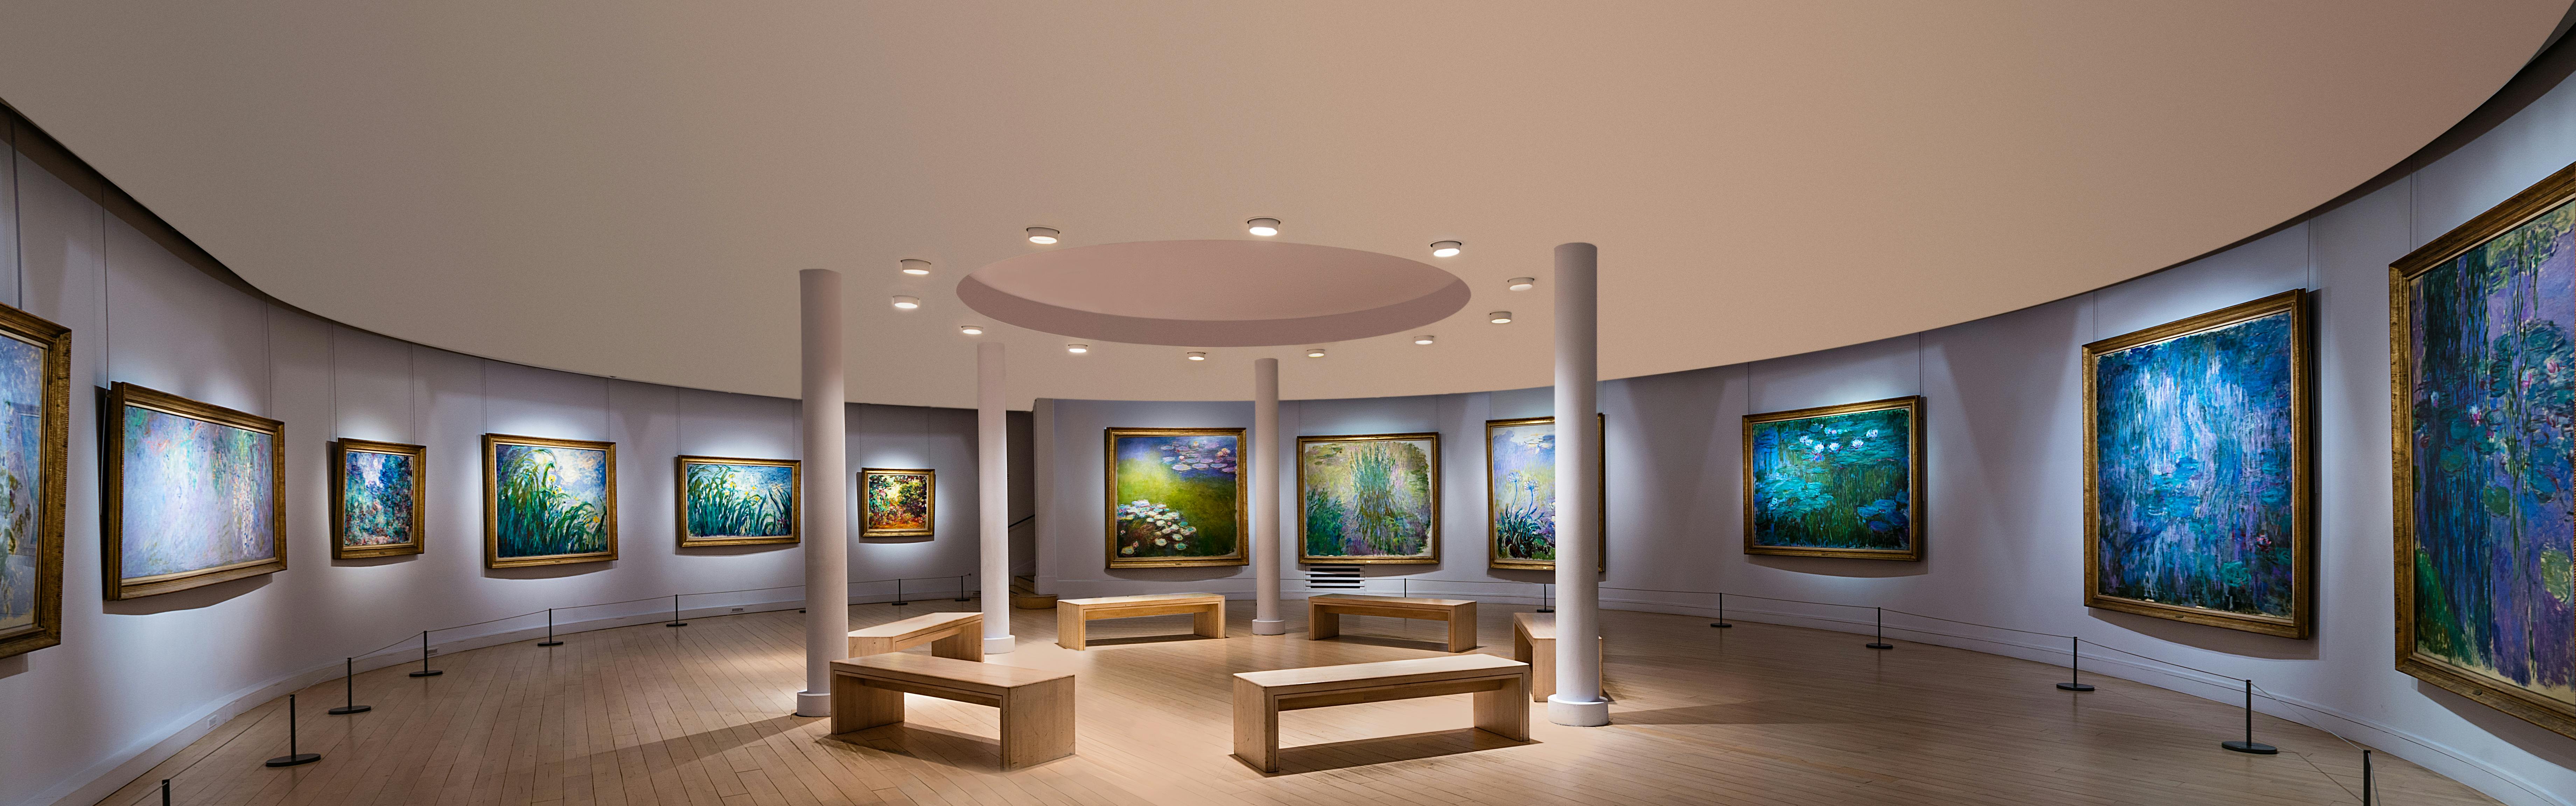 Billets d'entrée pour le musée Marmottan Monet